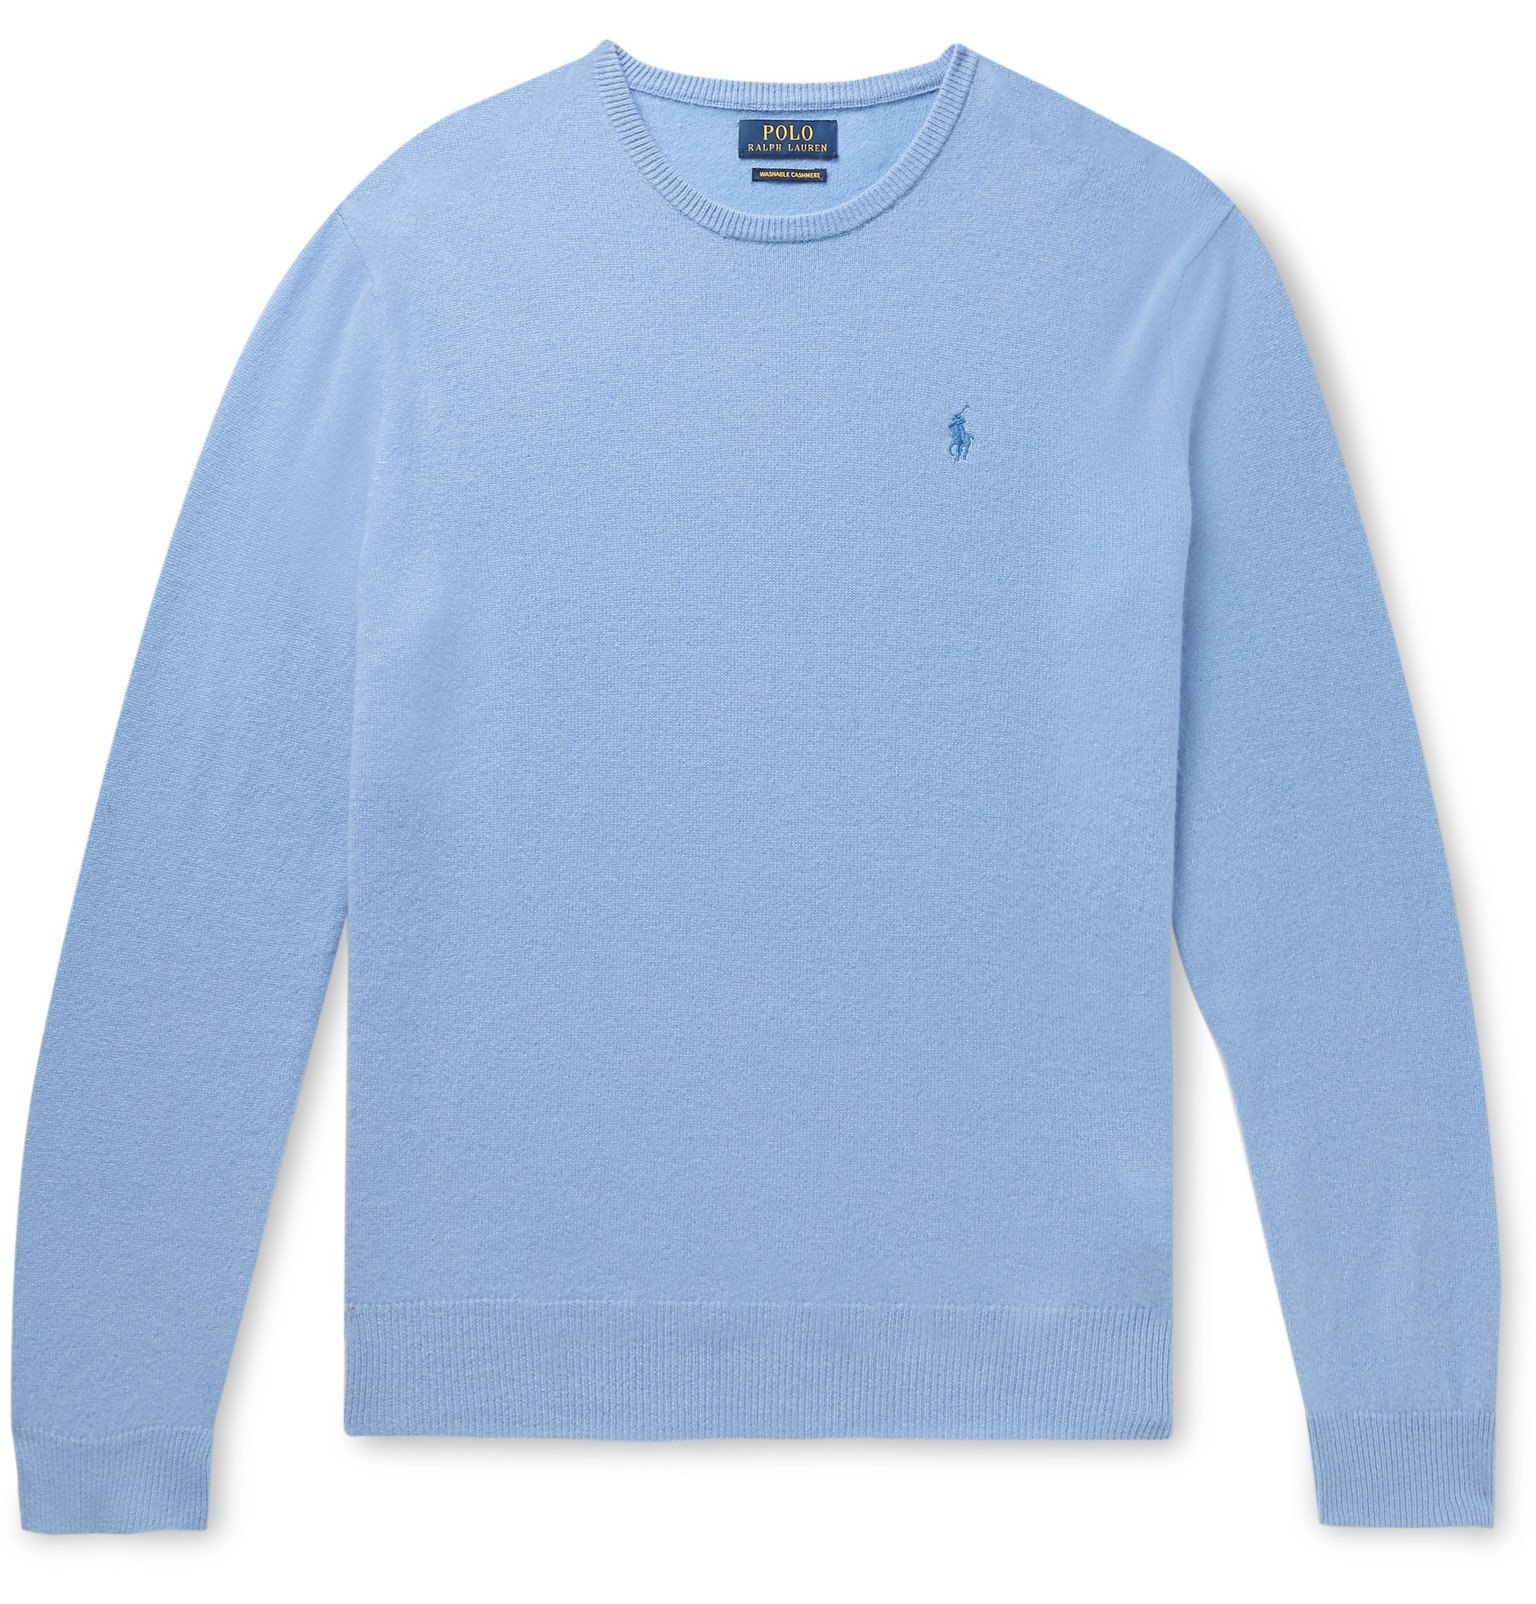 Polo Ralph Lauren - Cashmere Sweater - Blue Polo Ralph Lauren